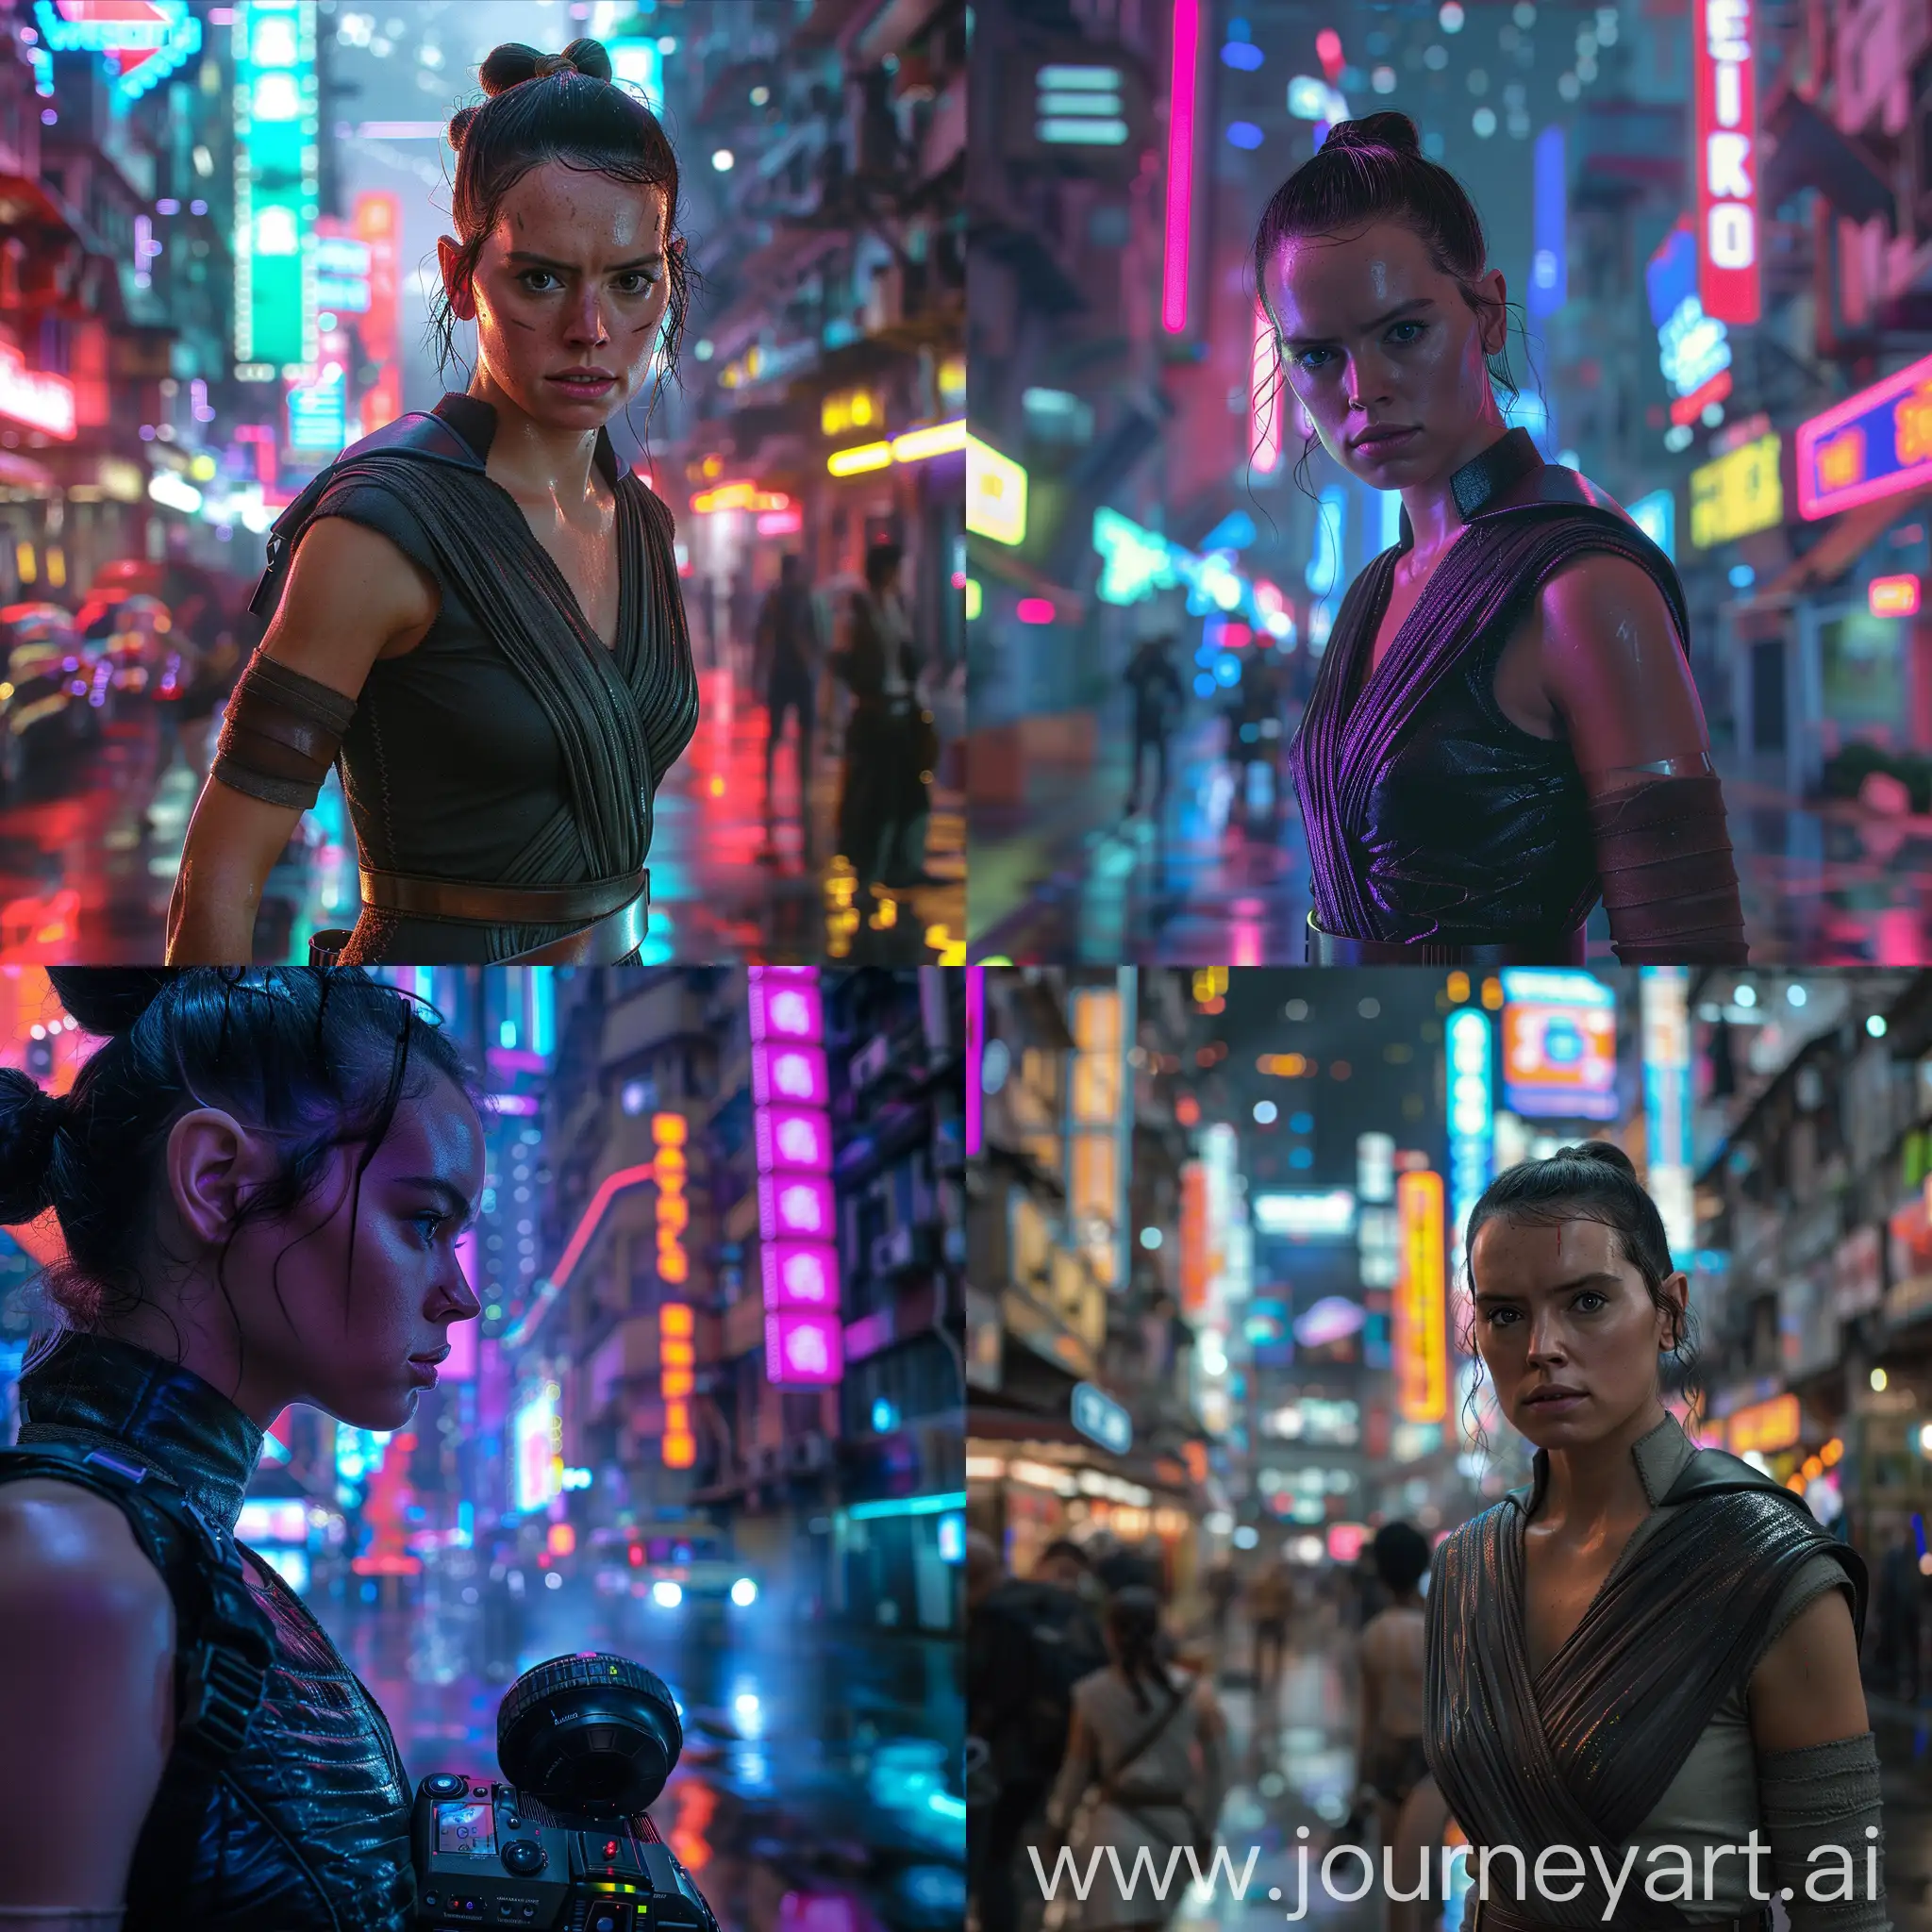 Rey-Skywalker-Cyberpunk-Portrait-in-Neon-City